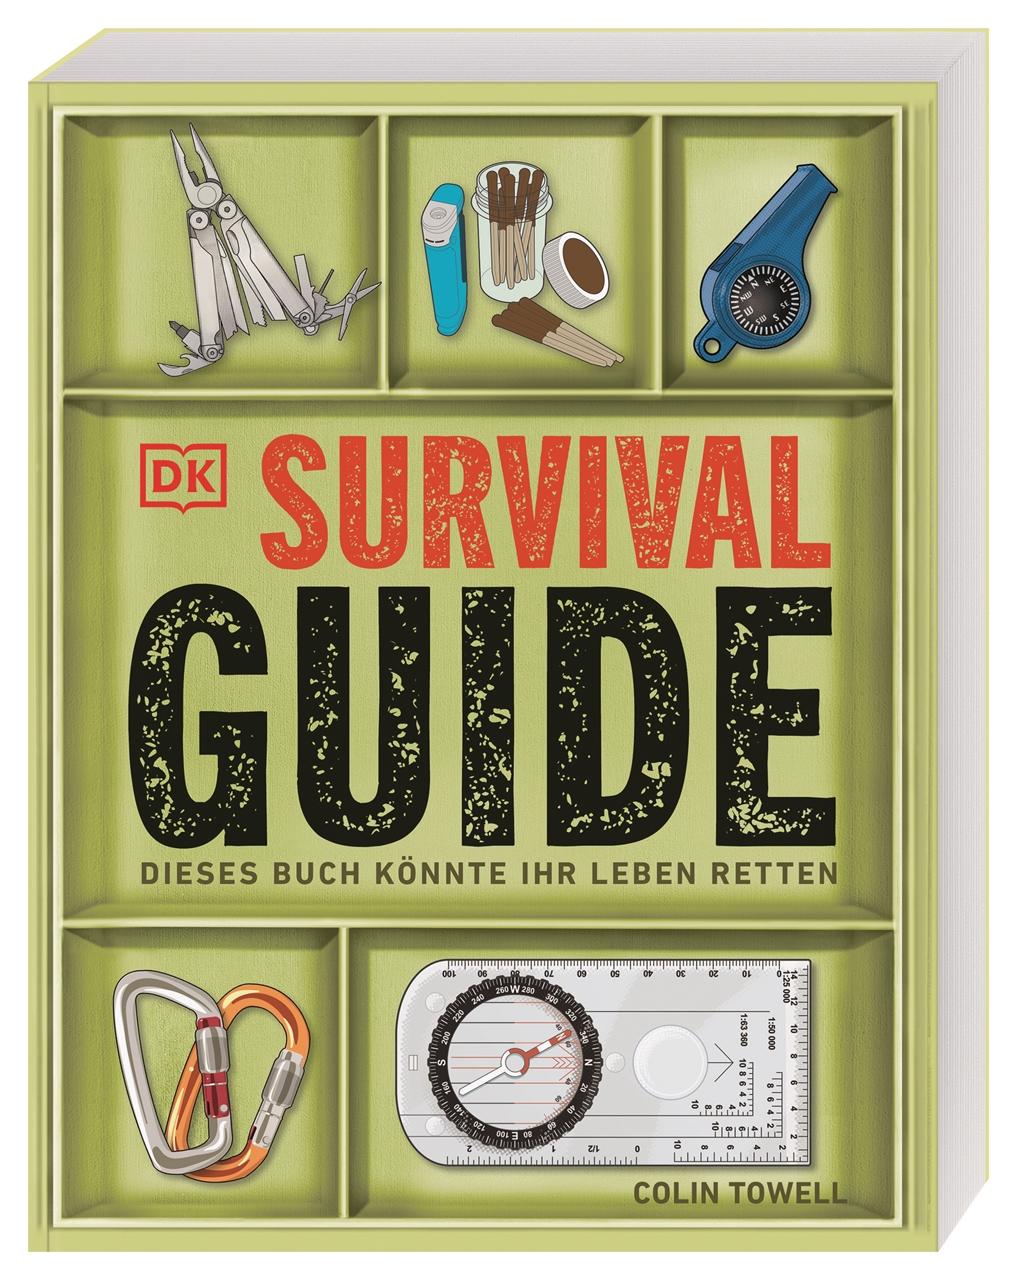 Survival-Guide Dieses Buch könnte Ihr Leben retten